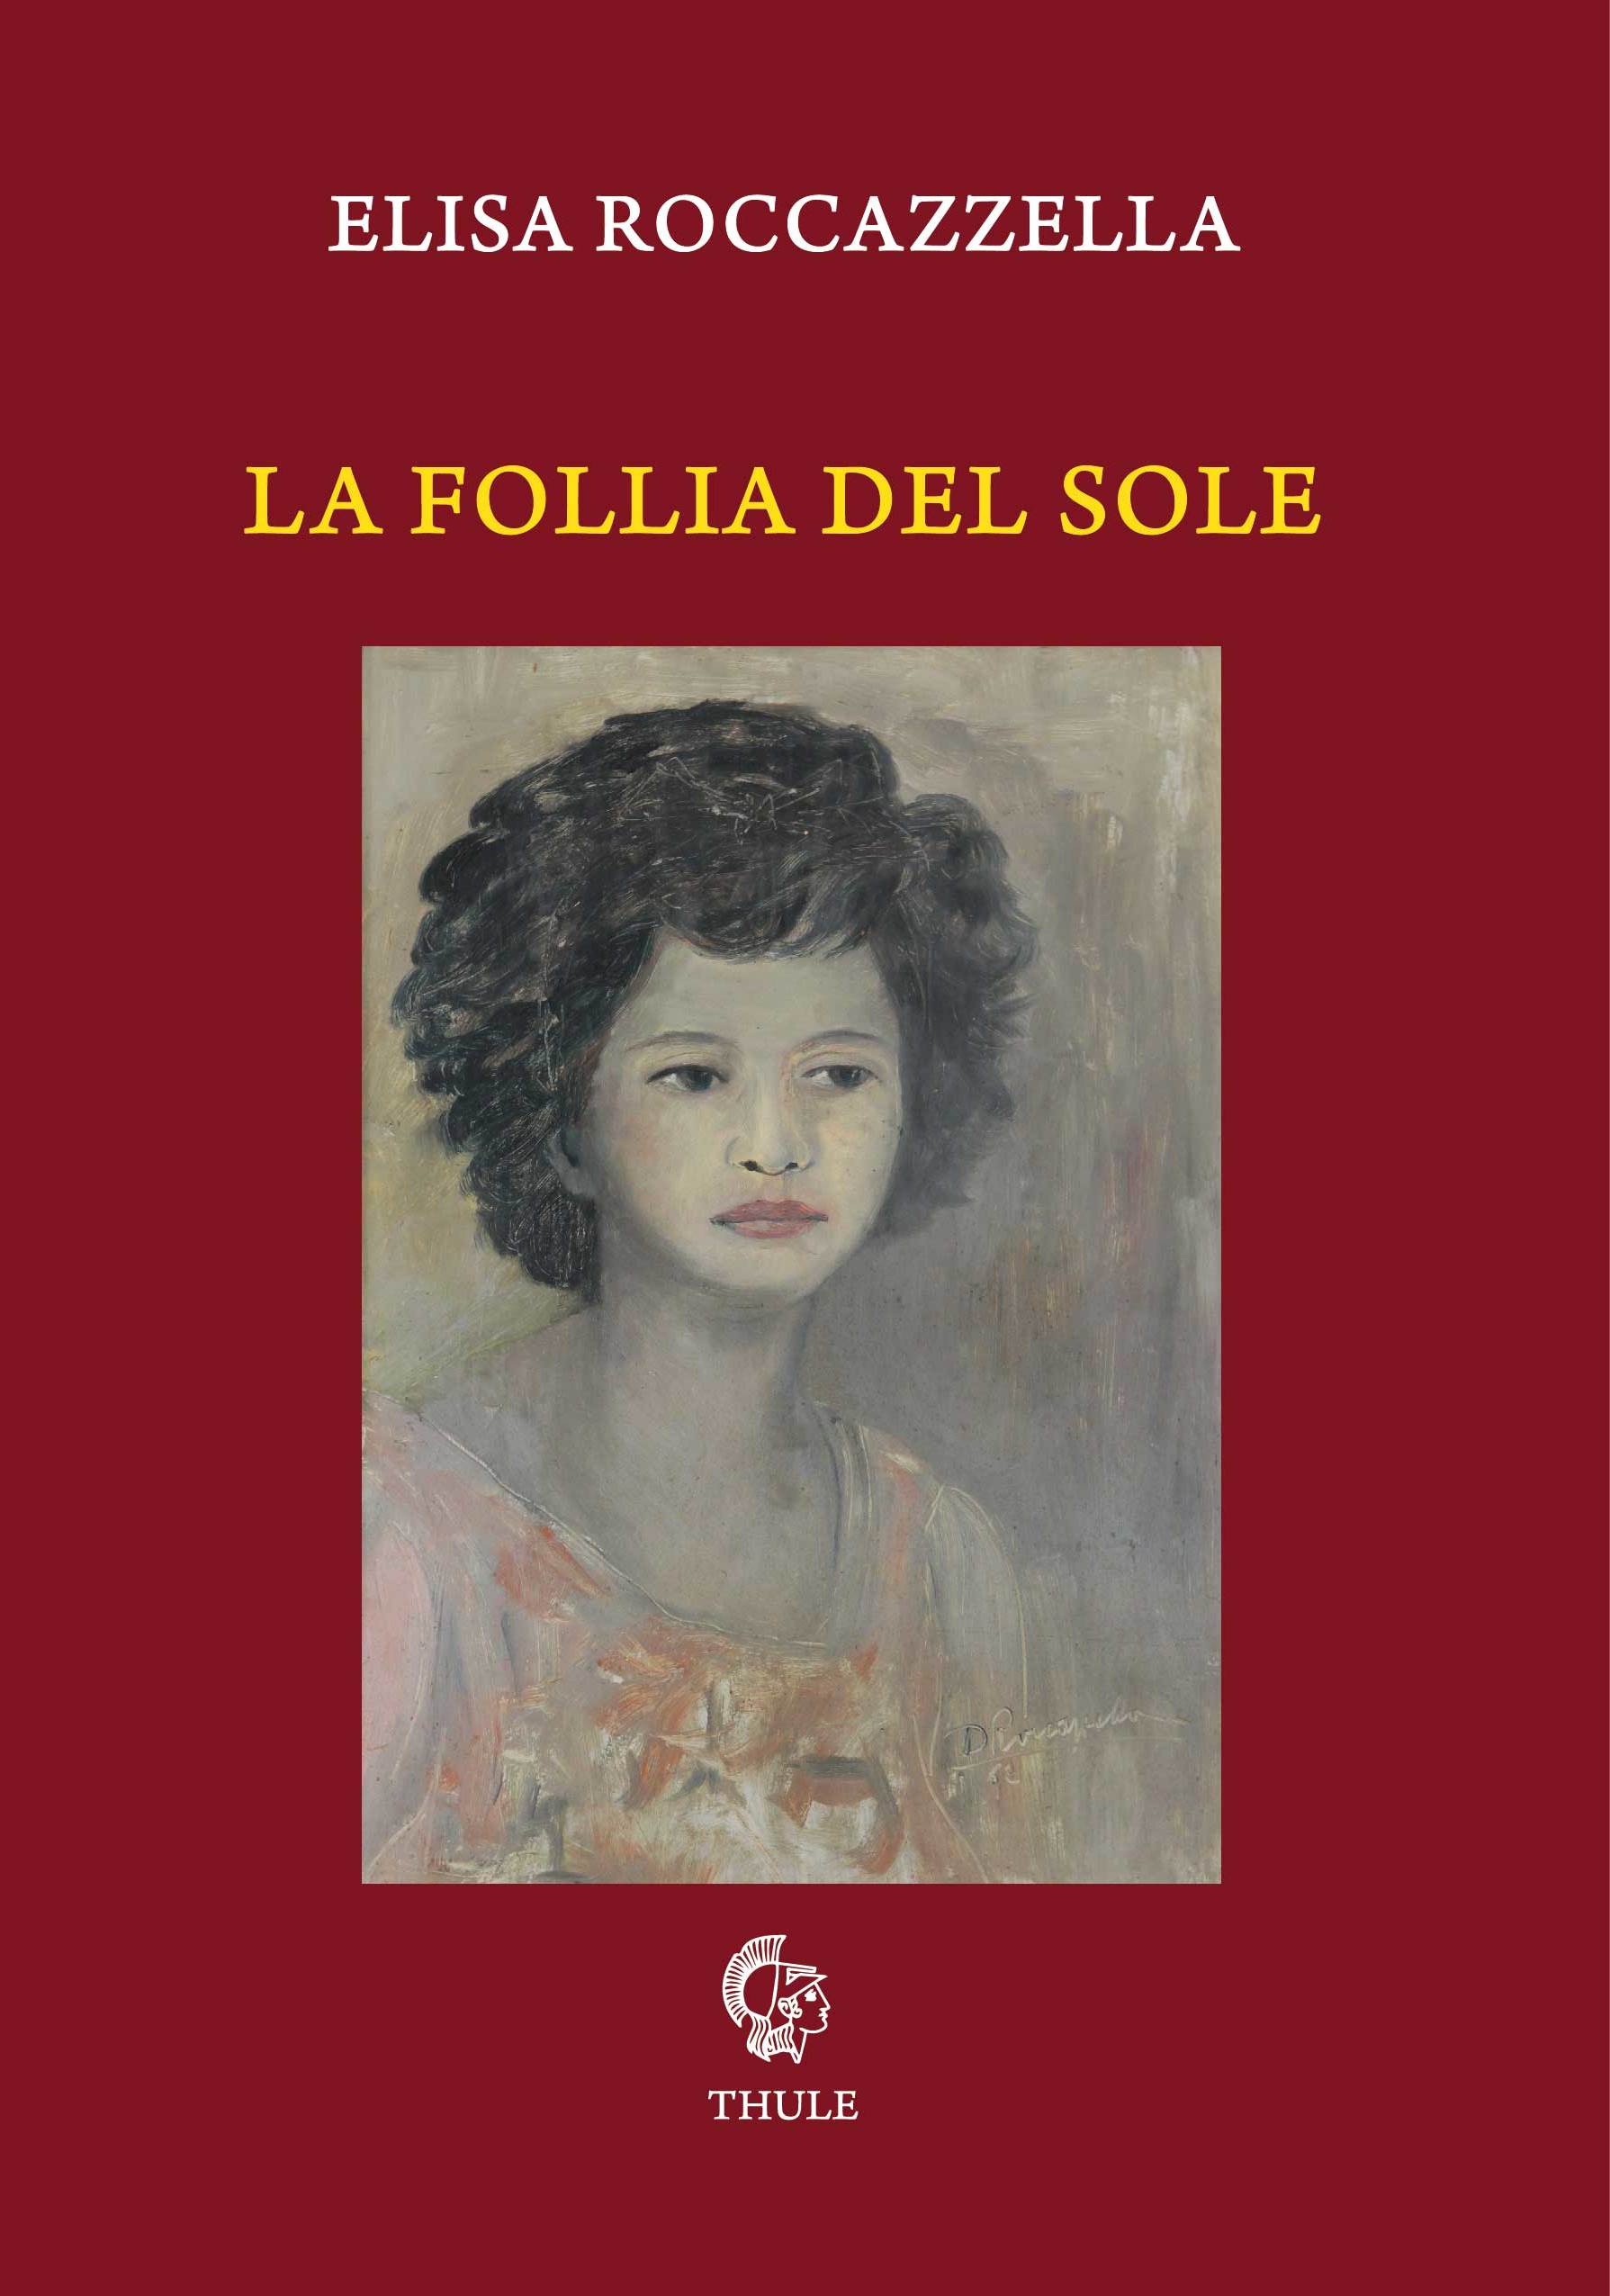 Prefazione di Tommaso Romano a "La follia del sole" di Elisa Roccazzella (Ed. Thule)